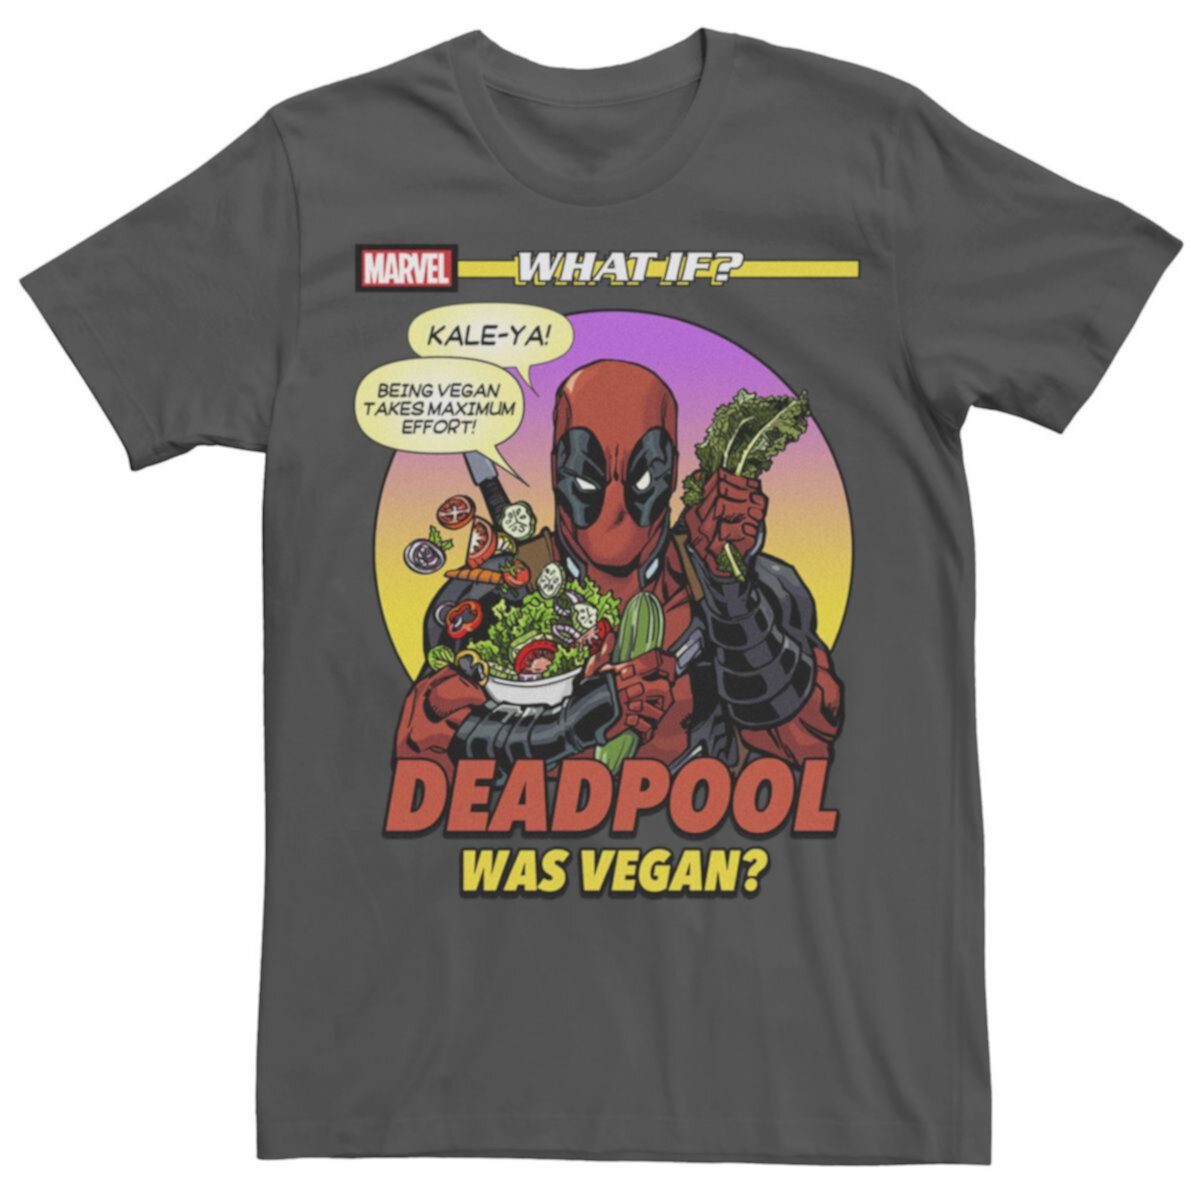 Мужская футболка с рисунком на обложке комиксов Marvel What If Deadpool Was Vegan Marvel